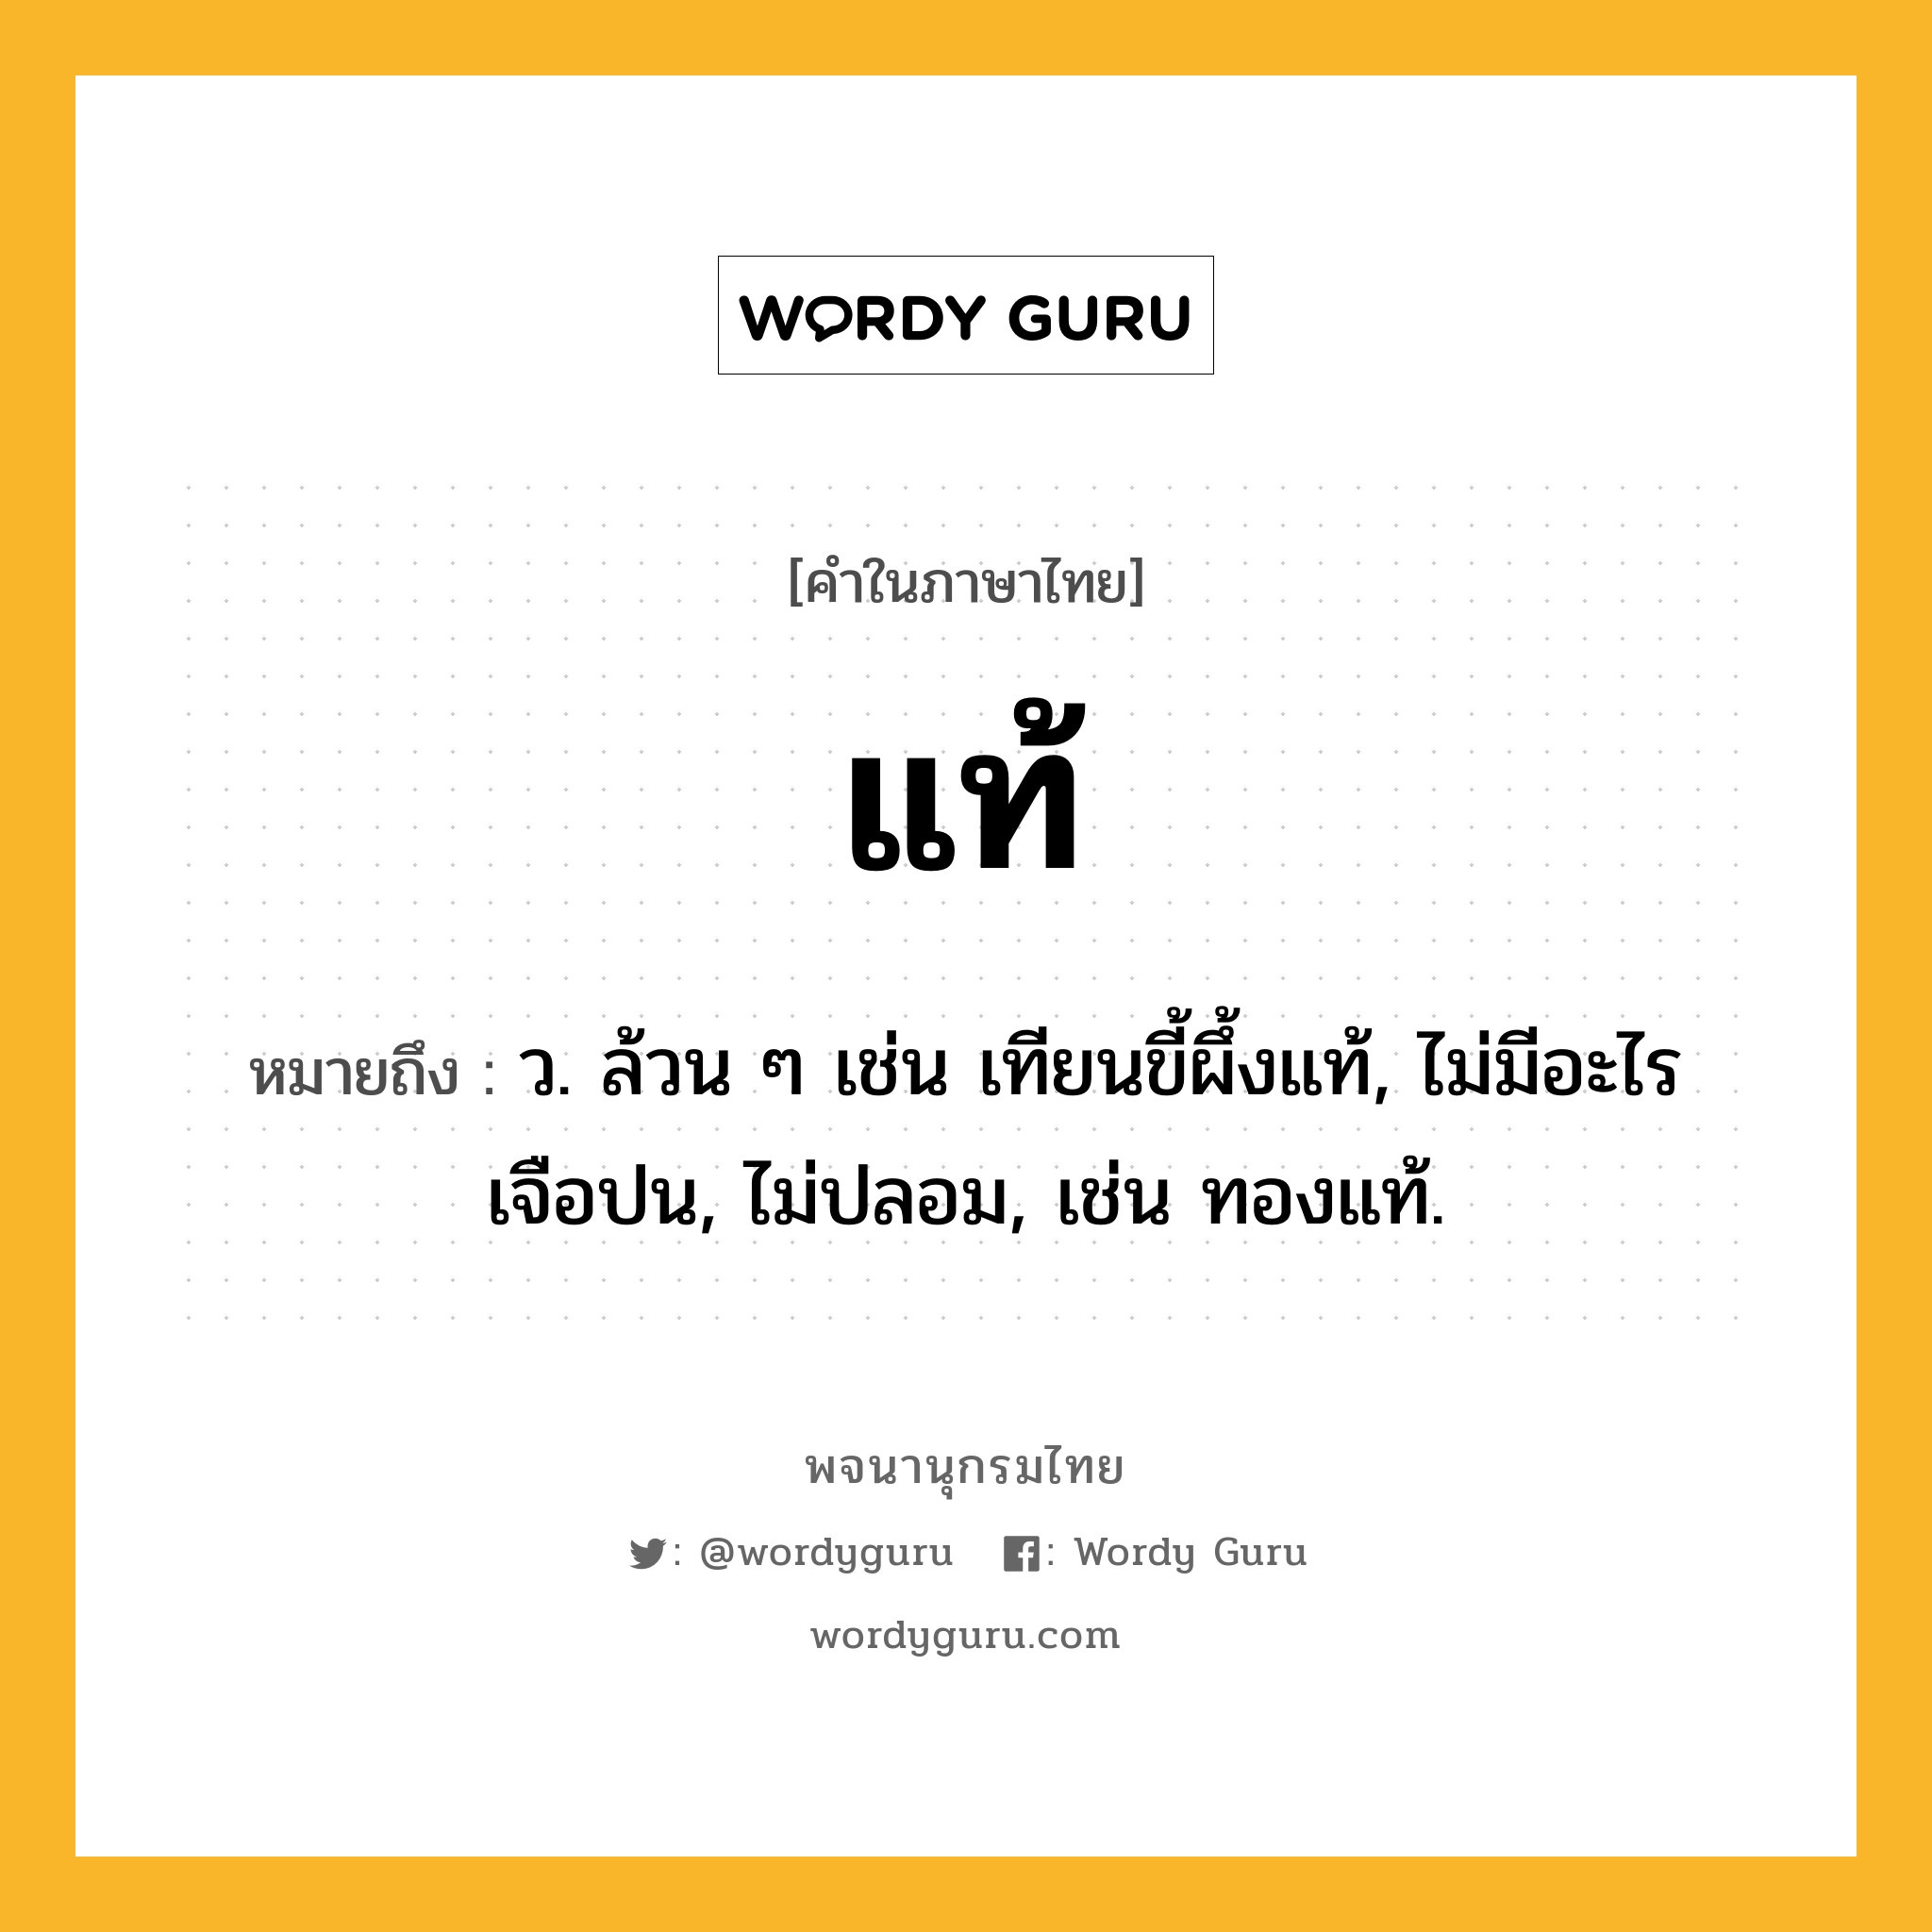 แท้ หมายถึงอะไร?, คำในภาษาไทย แท้ หมายถึง ว. ล้วน ๆ เช่น เทียนขี้ผึ้งแท้, ไม่มีอะไรเจือปน, ไม่ปลอม, เช่น ทองแท้.